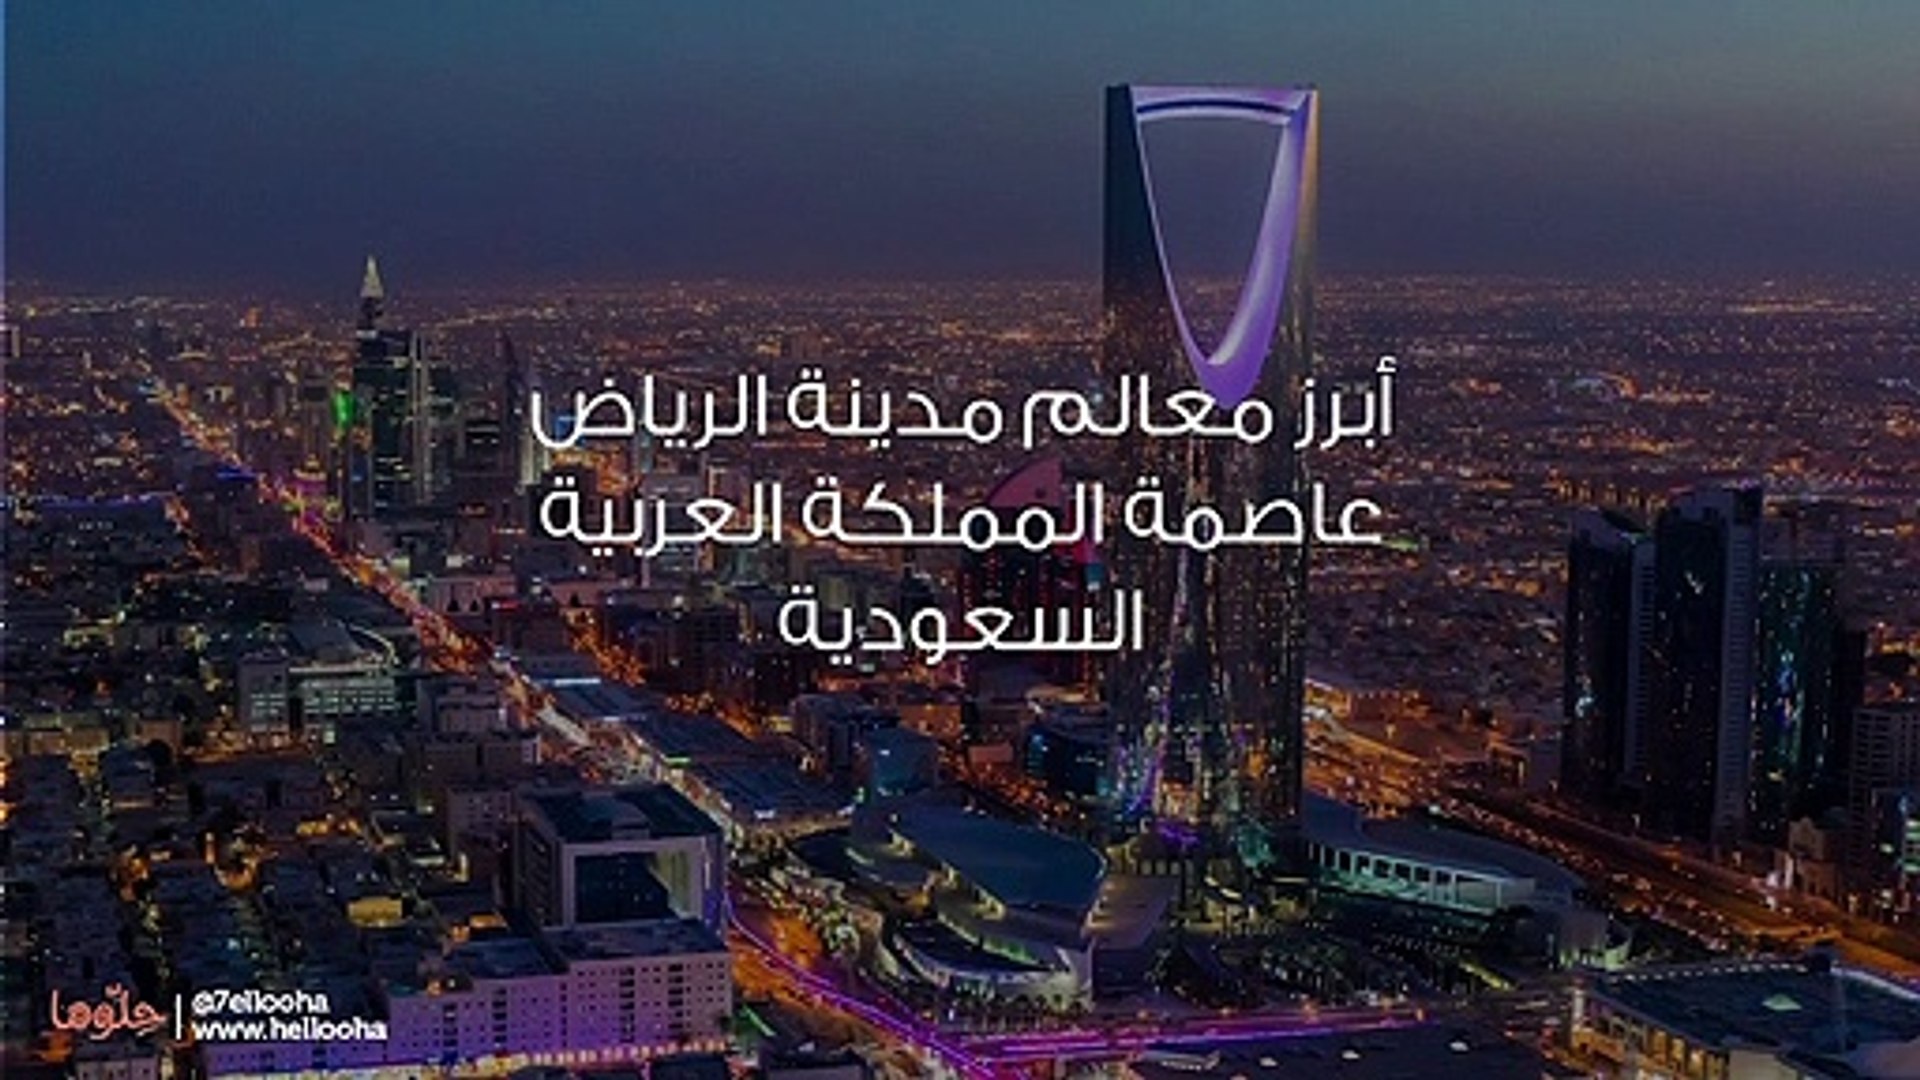 أبرز معالم مدينة الرياض عاصمة المملكة العربية السعودية - فيديو Dailymotion